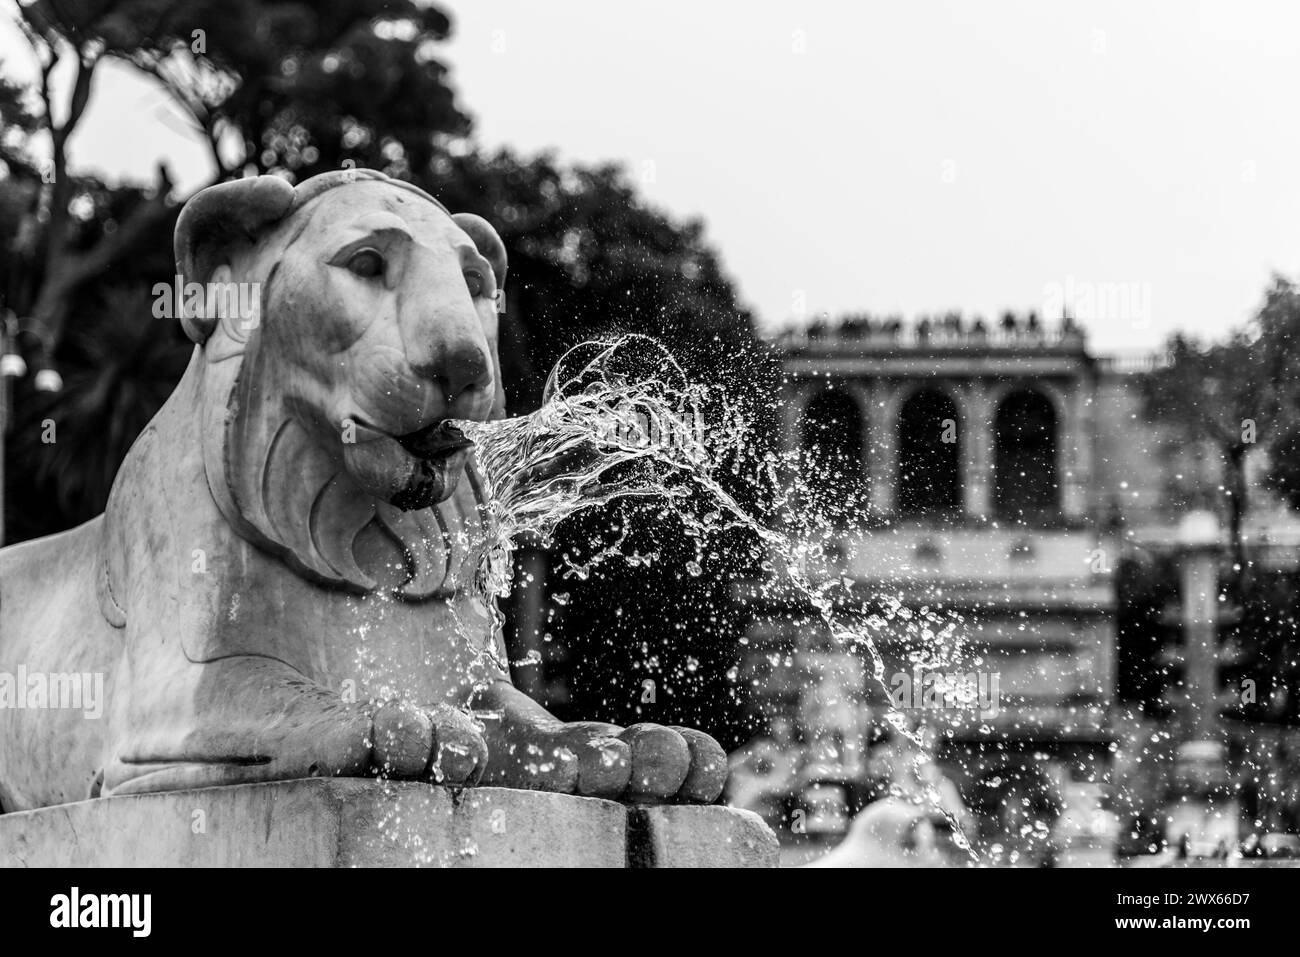 La fontana dei leoni in Piazza del popolo, con l'acqua che scorre aggraziatamente dalla bocca dei leoni. Roma, Italia. Fotografia in bianco e nero. Foto Stock